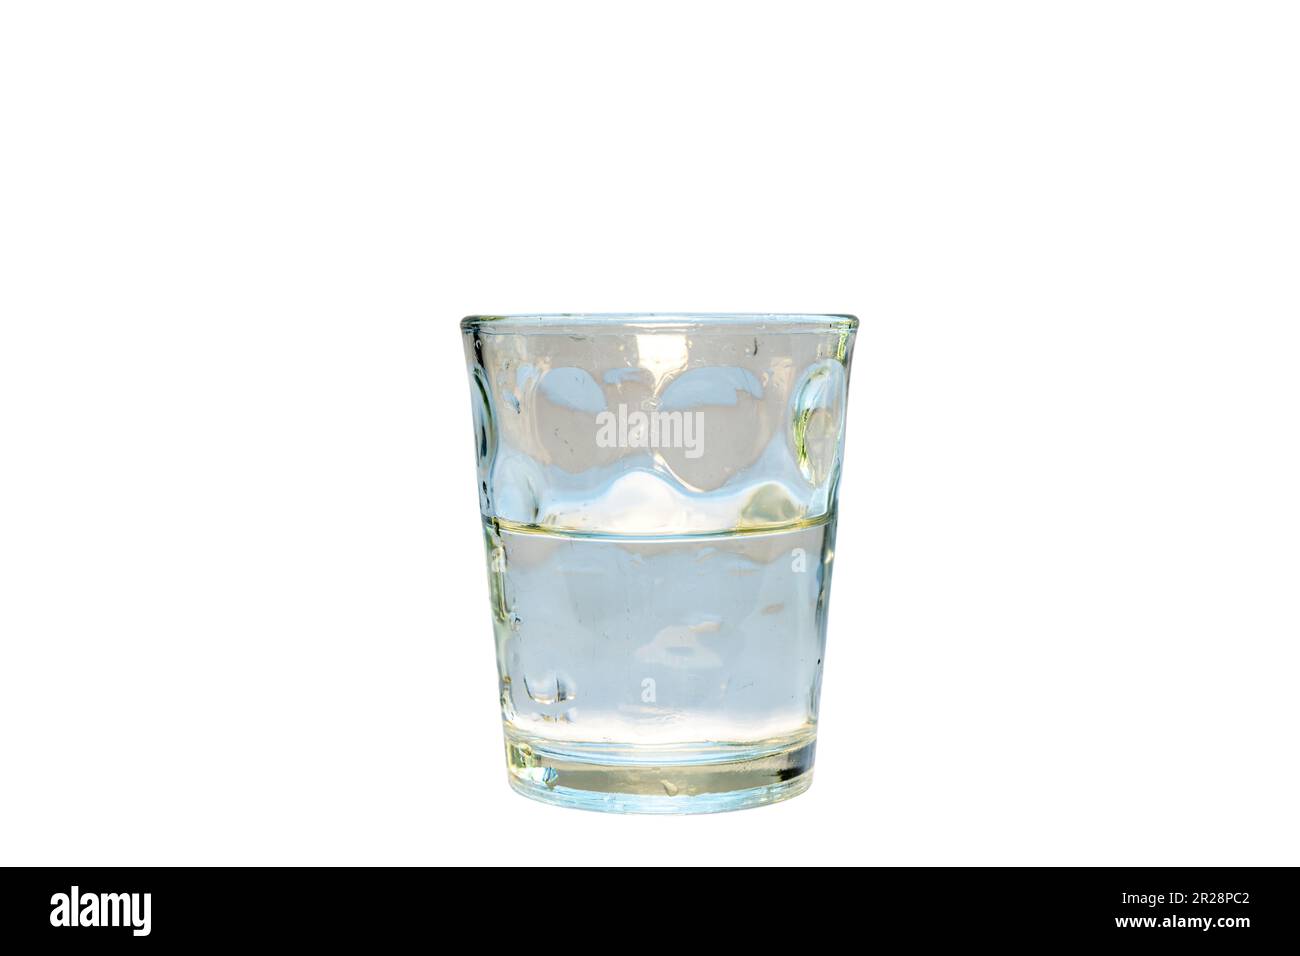 Halb Glas voll mit Wasser oder halb Glas leer isoliert auf weißem Hintergrund Stockfoto